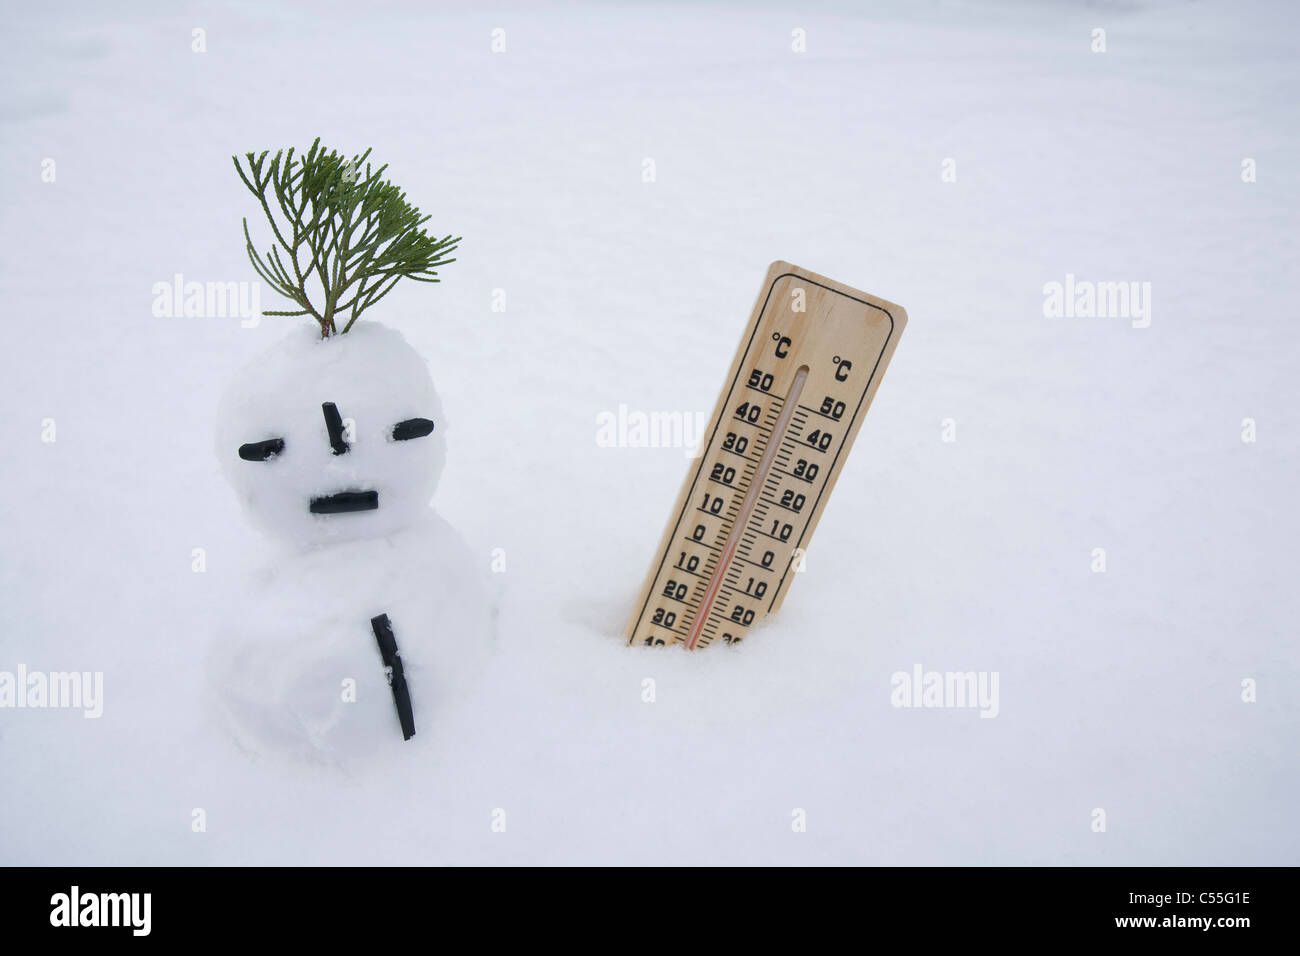 Schneemann und Temperatur auf Schneefeld Stockfoto